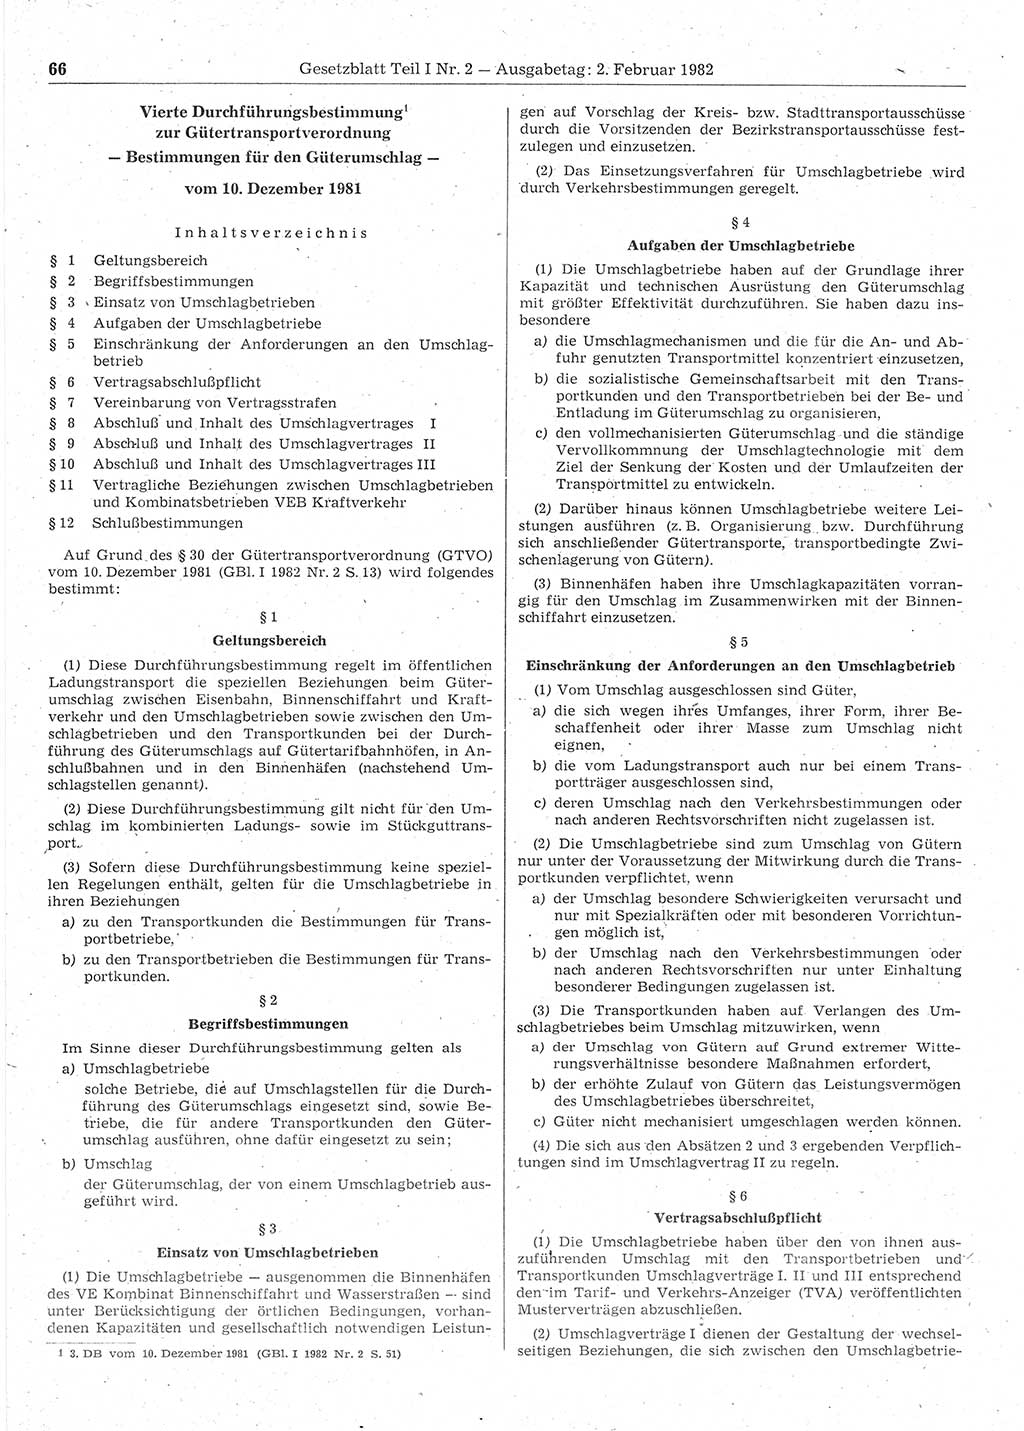 Gesetzblatt (GBl.) der Deutschen Demokratischen Republik (DDR) Teil Ⅰ 1982, Seite 66 (GBl. DDR Ⅰ 1982, S. 66)